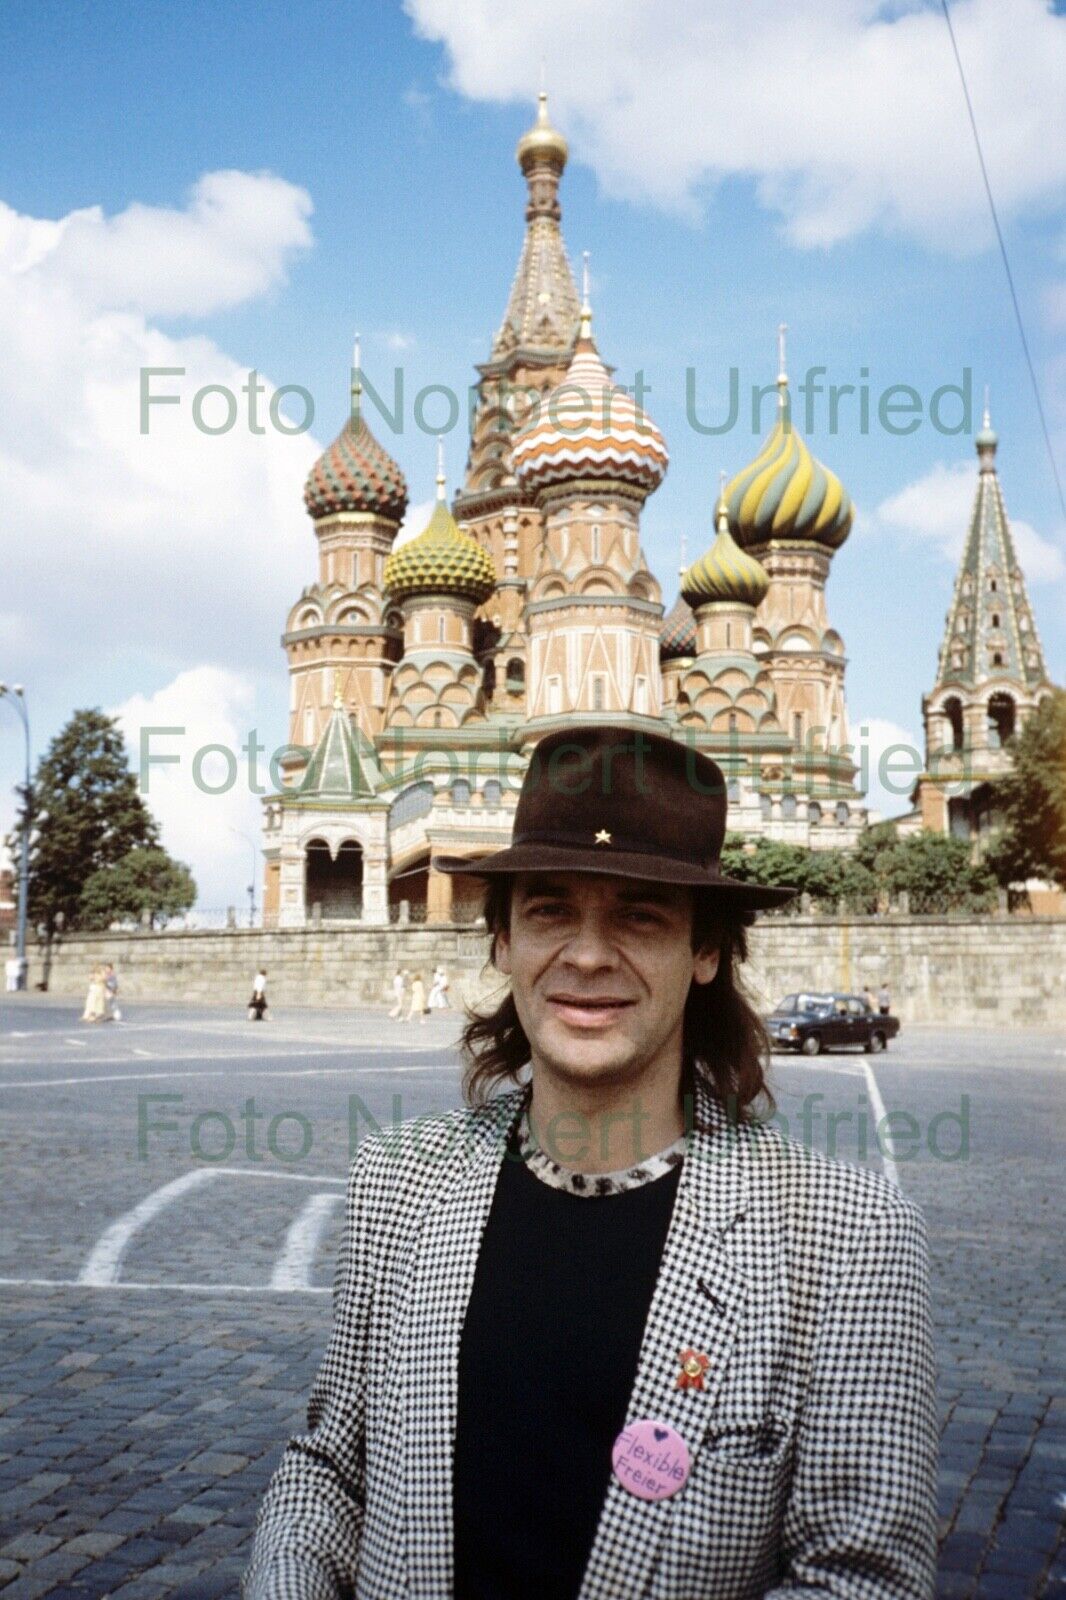 Udo Lindenberg - Kreml Russland - Foto 20 x 30 cm ohne Autogramm (Nr 2-23